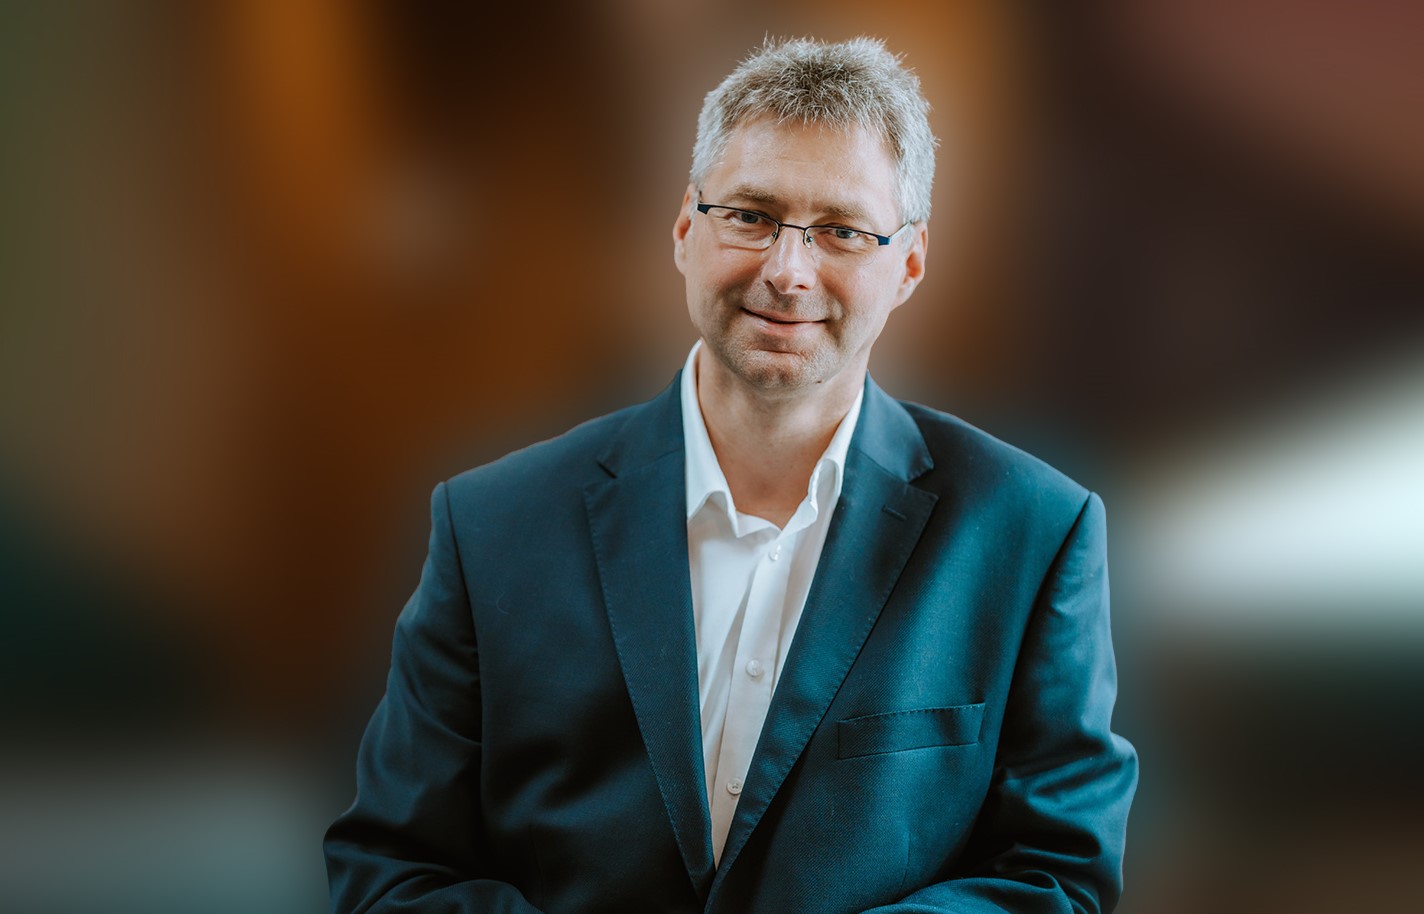 Cyfryzacja bez granic – Grzegorz Wójcik, współzałożyciel i CEO Autenti o przyszłości e-podpisów i konieczności depapieryzacji biznesu w każdej skali